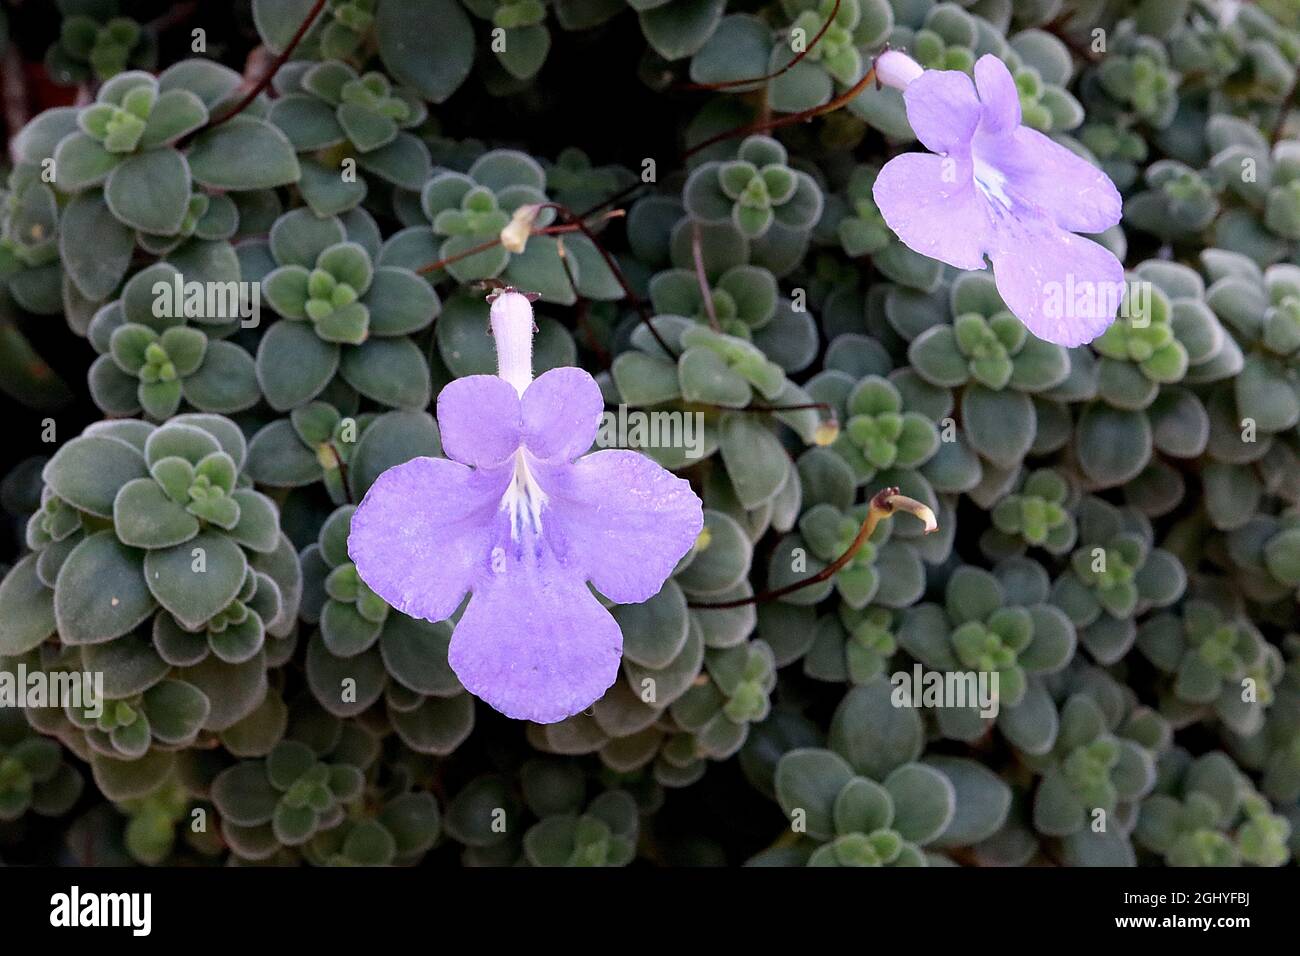 Streptocarpus saxorum faux violet africain – mauve fleurs en forme d'entonnoir et petites feuilles charnues vertes foncé ovées, août, Angleterre, Royaume-Uni Banque D'Images